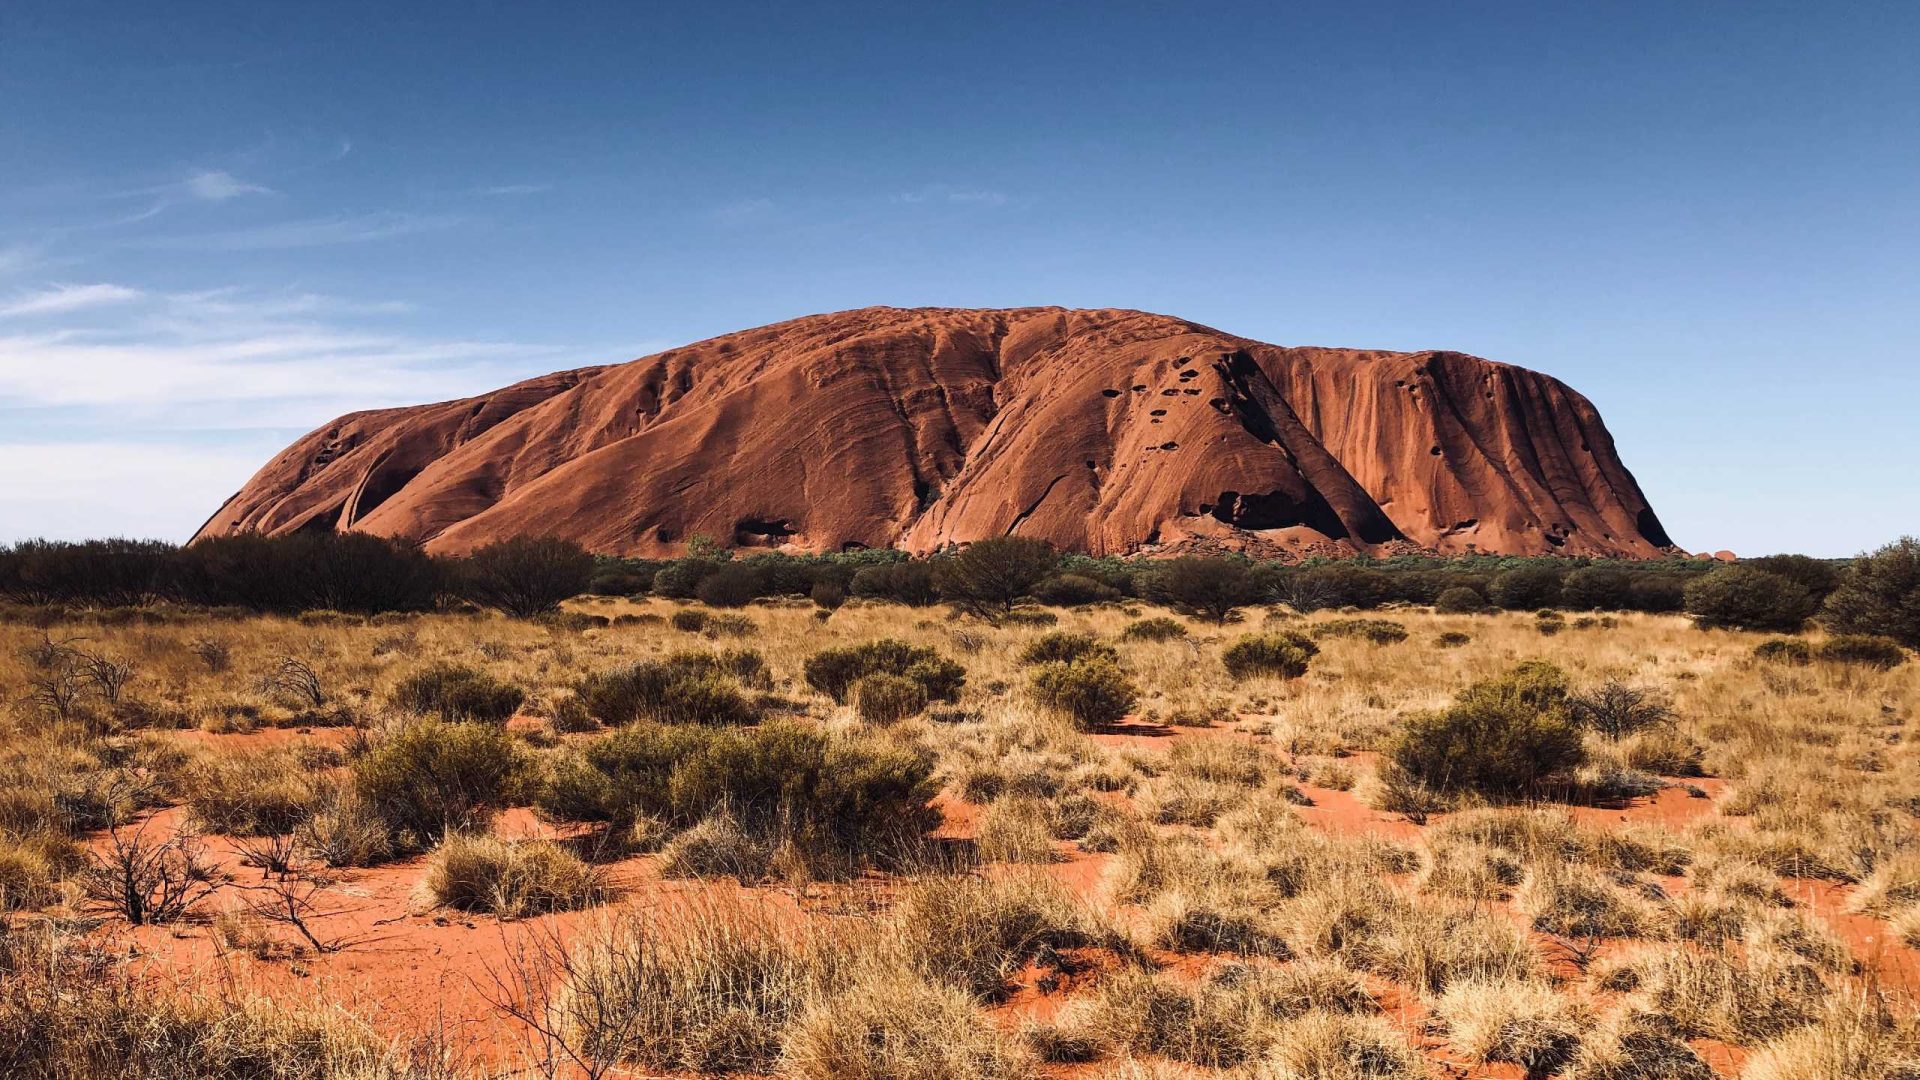 A landscape shot of Uluru, Australia.